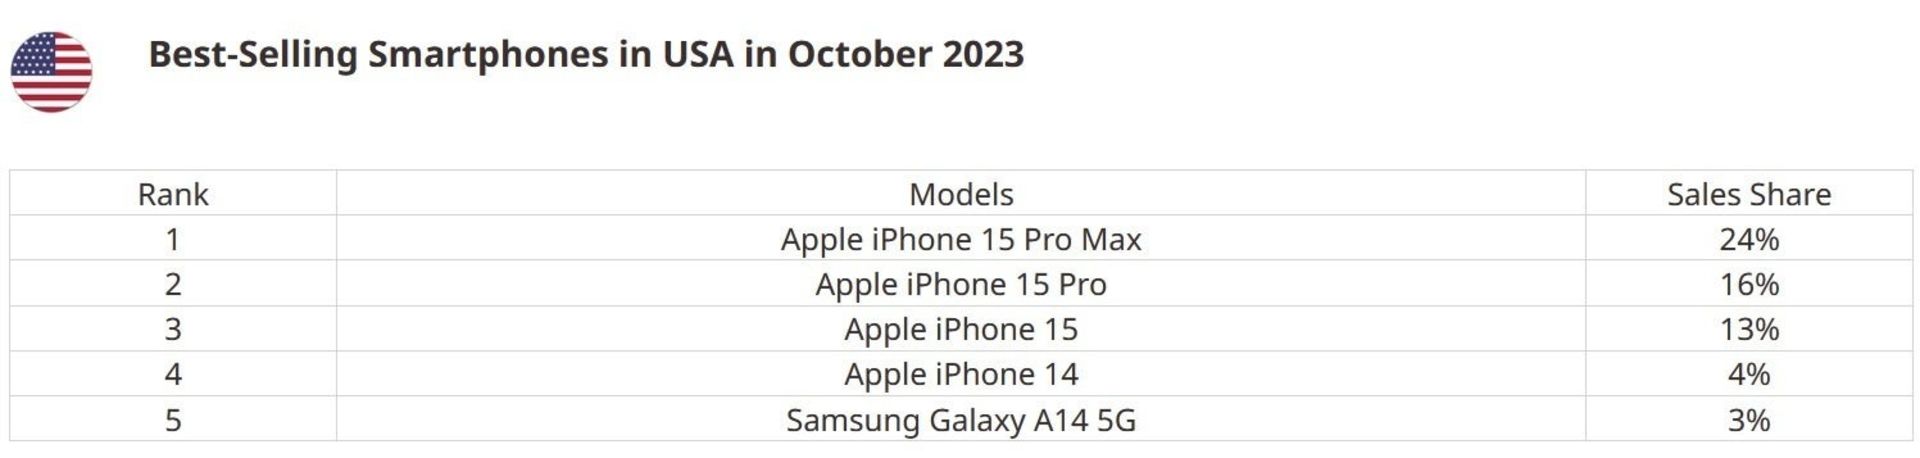 فهرست ۵ گوشی پرفروش در بازار آمریکا در ماه اکتبر ۲۰۲۳